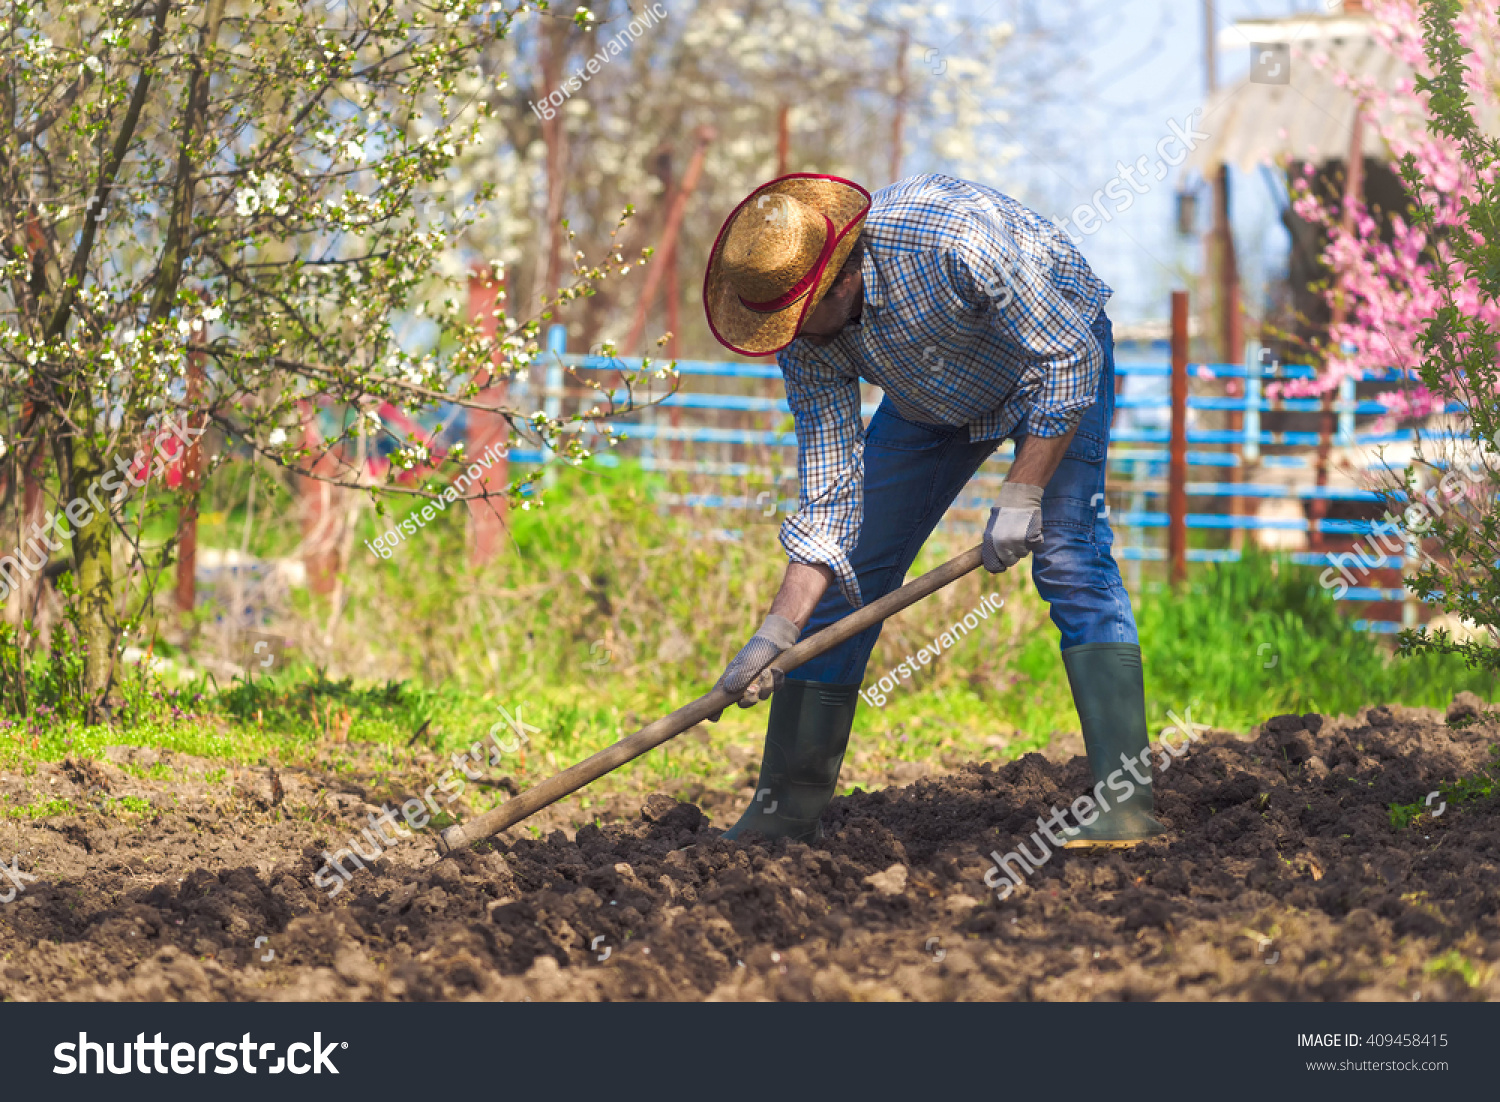 Man Hoeing Vegetable Garden Soil New Stock Photo 409458415 - Shutterstock